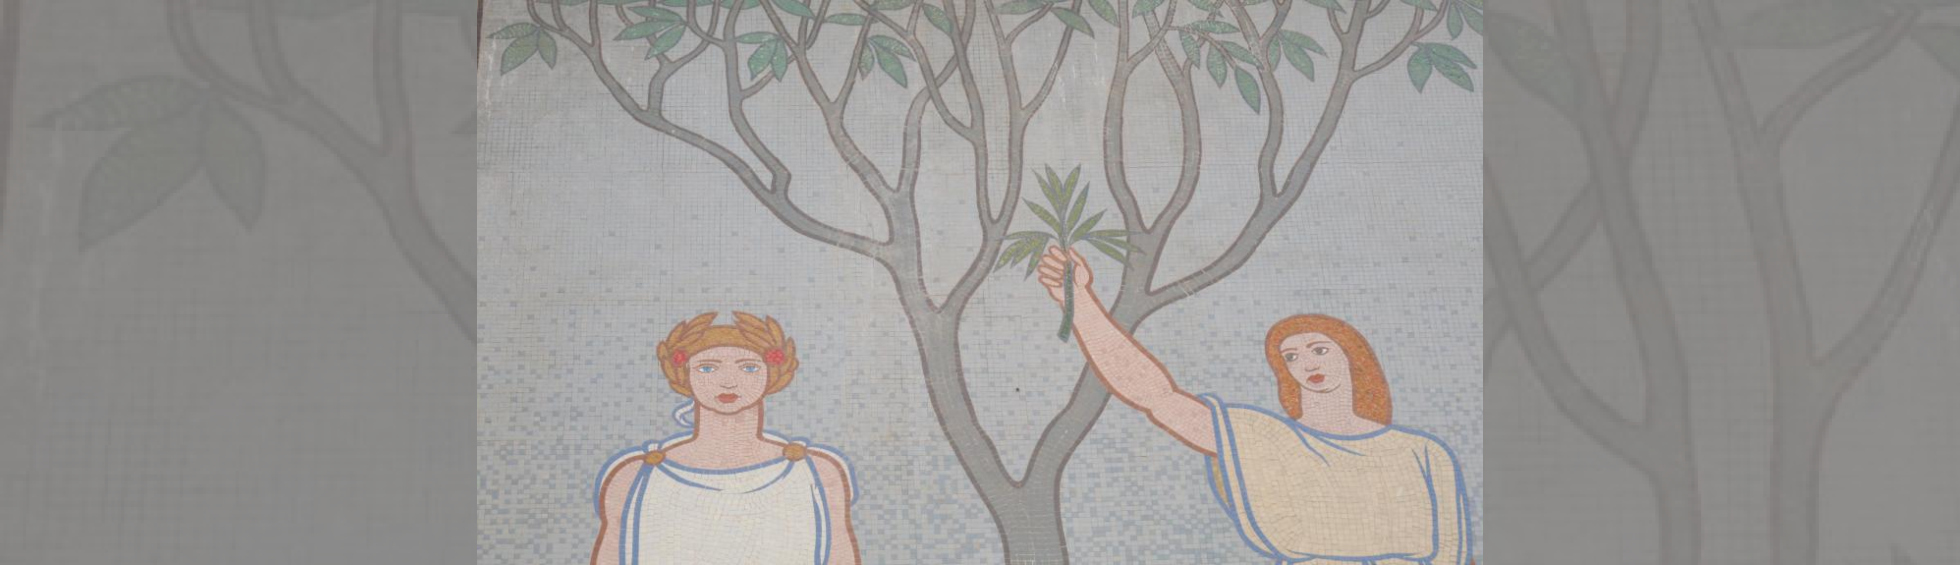 Deux jeunes filles sous un arbre: l'une tenant un rameau d'olivier , l'autre portant une couronne de laurier